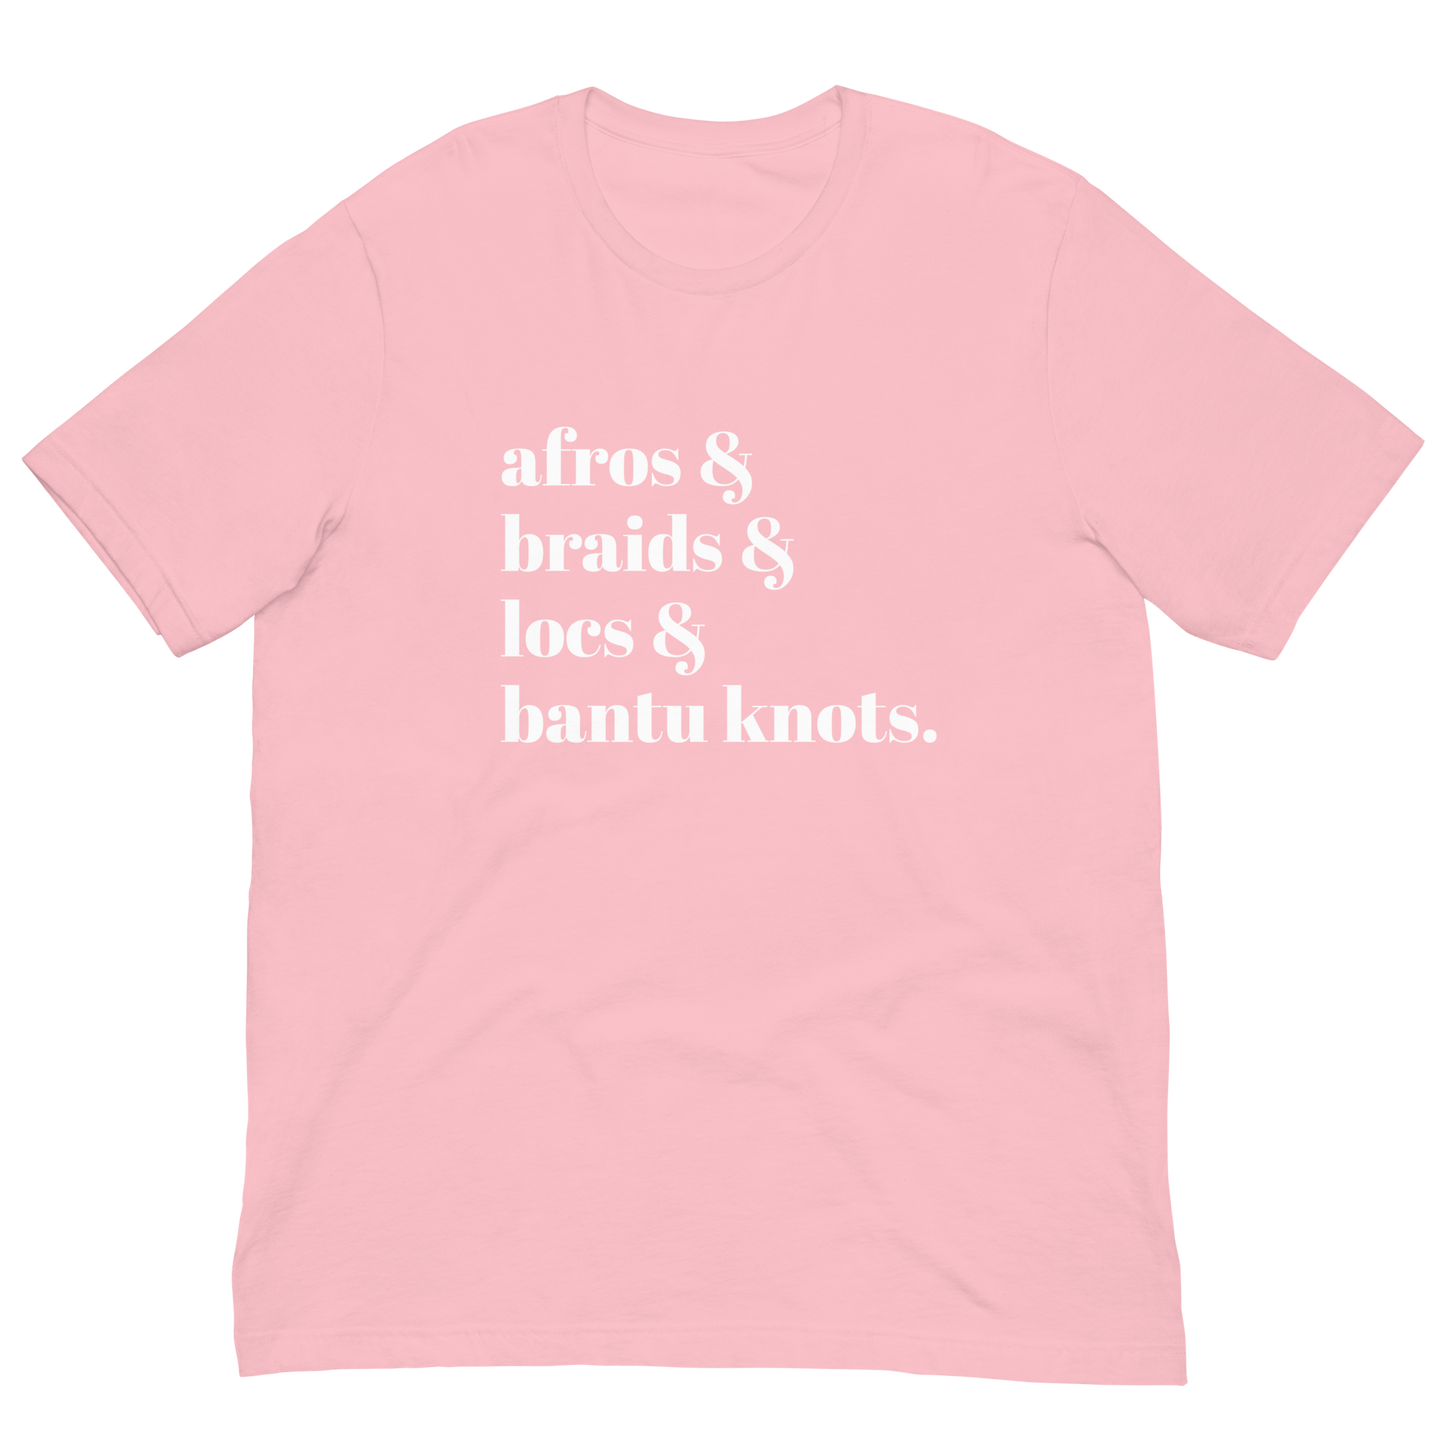 Afros &... T-Shirt